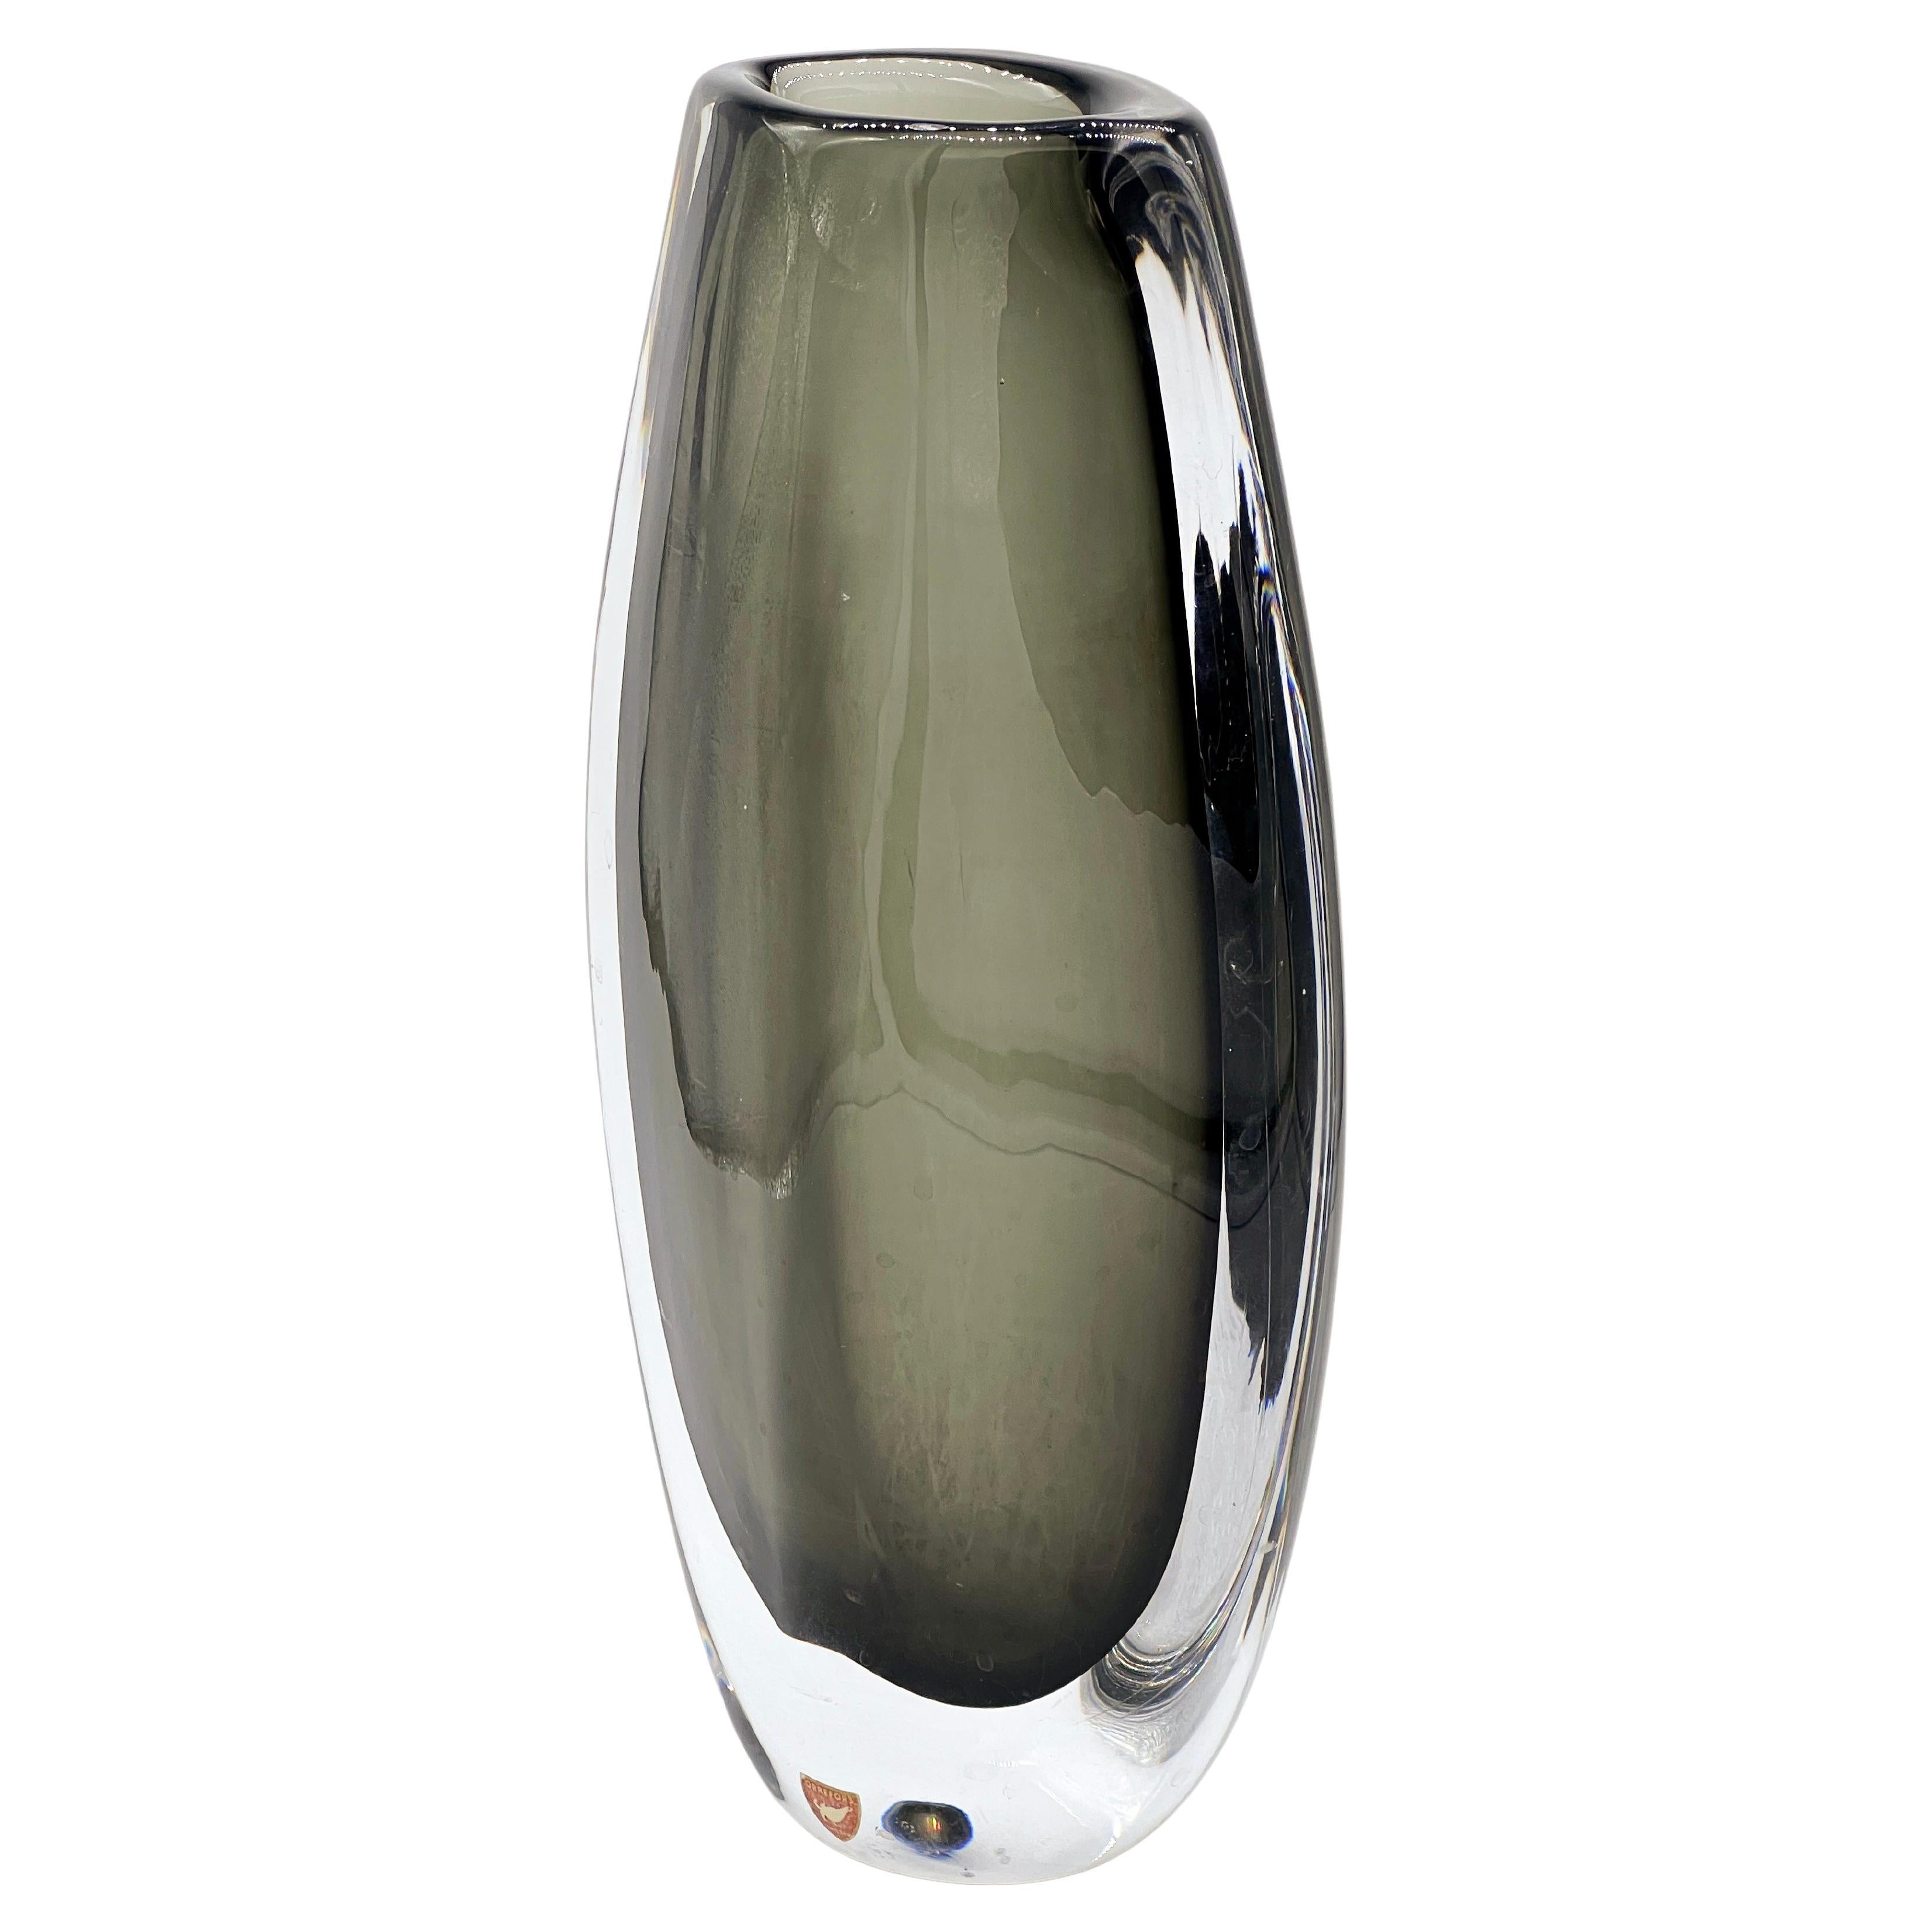 Die dicke und massive schwedische Orrefors-Vase aus grauem/grünem Sommerso-Glas